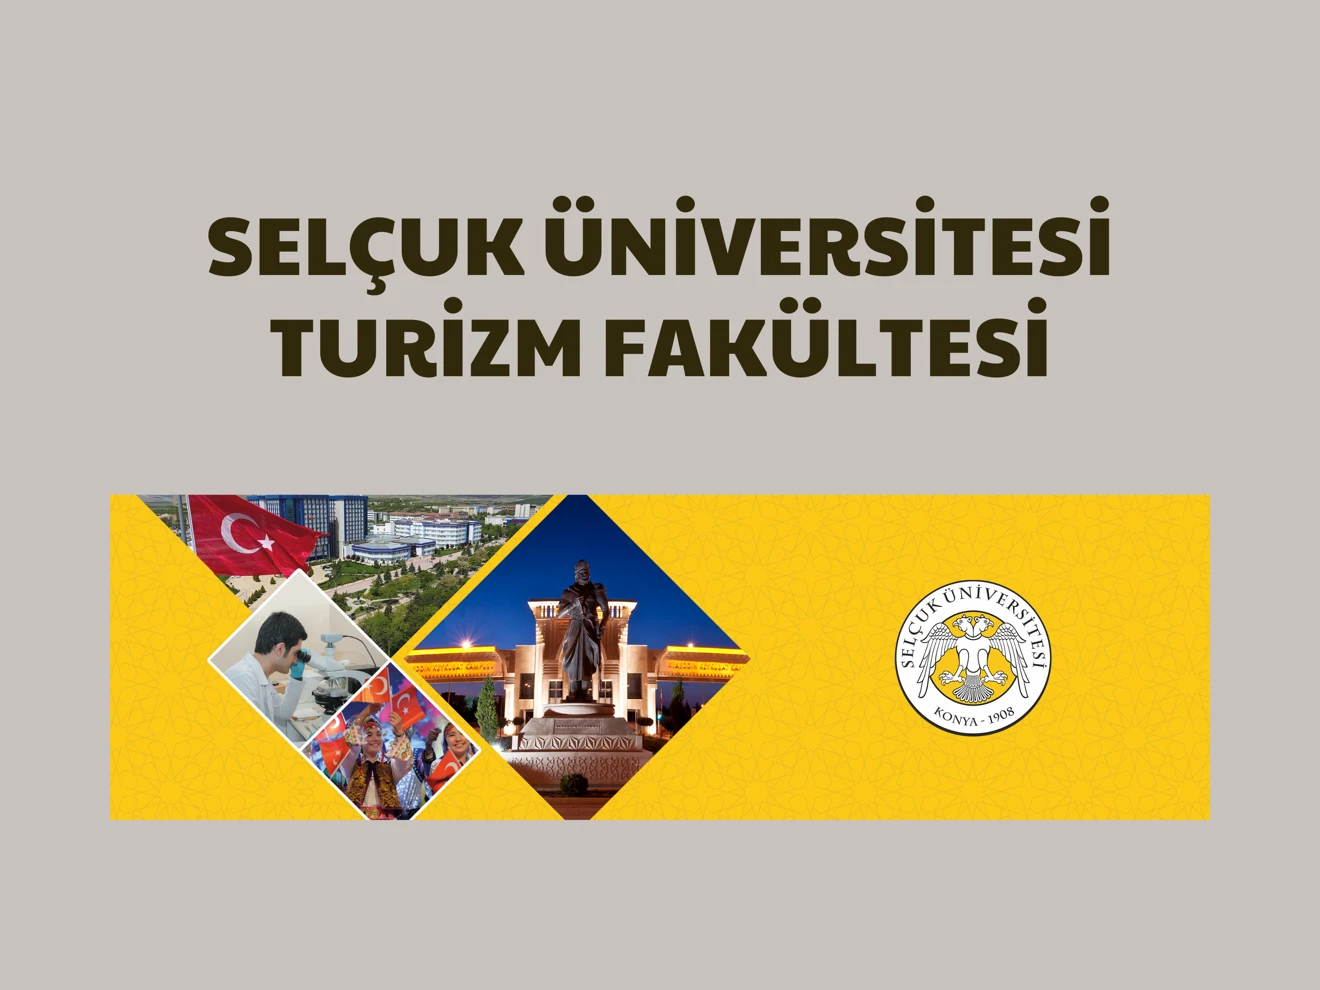 Selçuk Üniversitesi Turizm Fakültesi